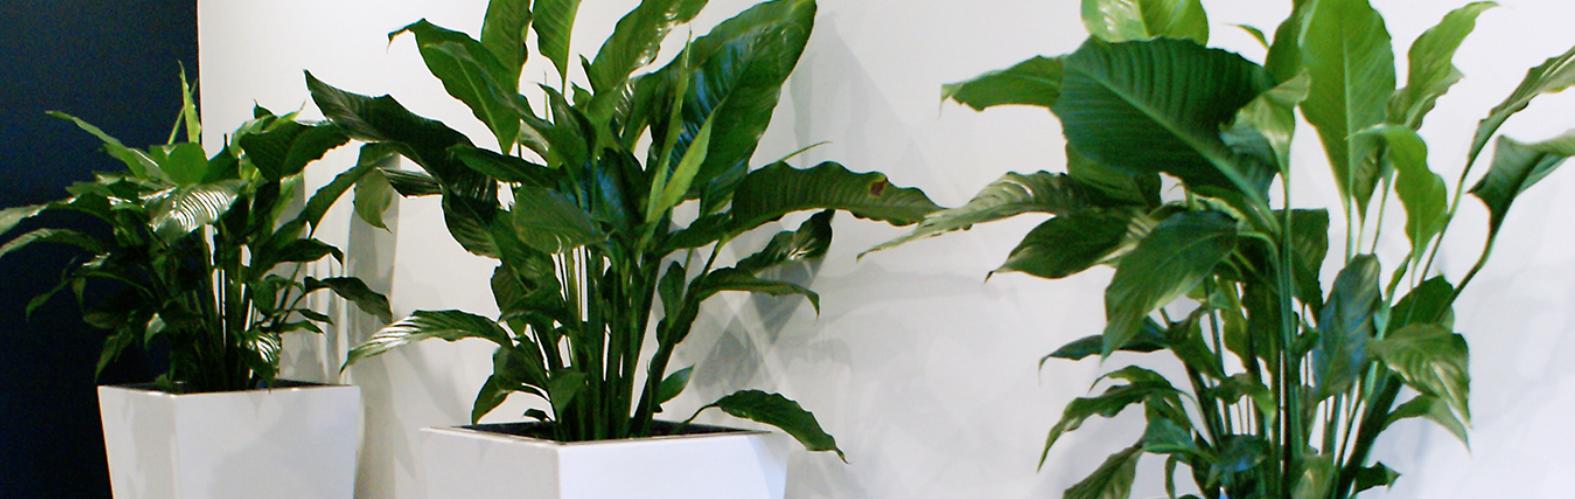 Indoor plants along wall